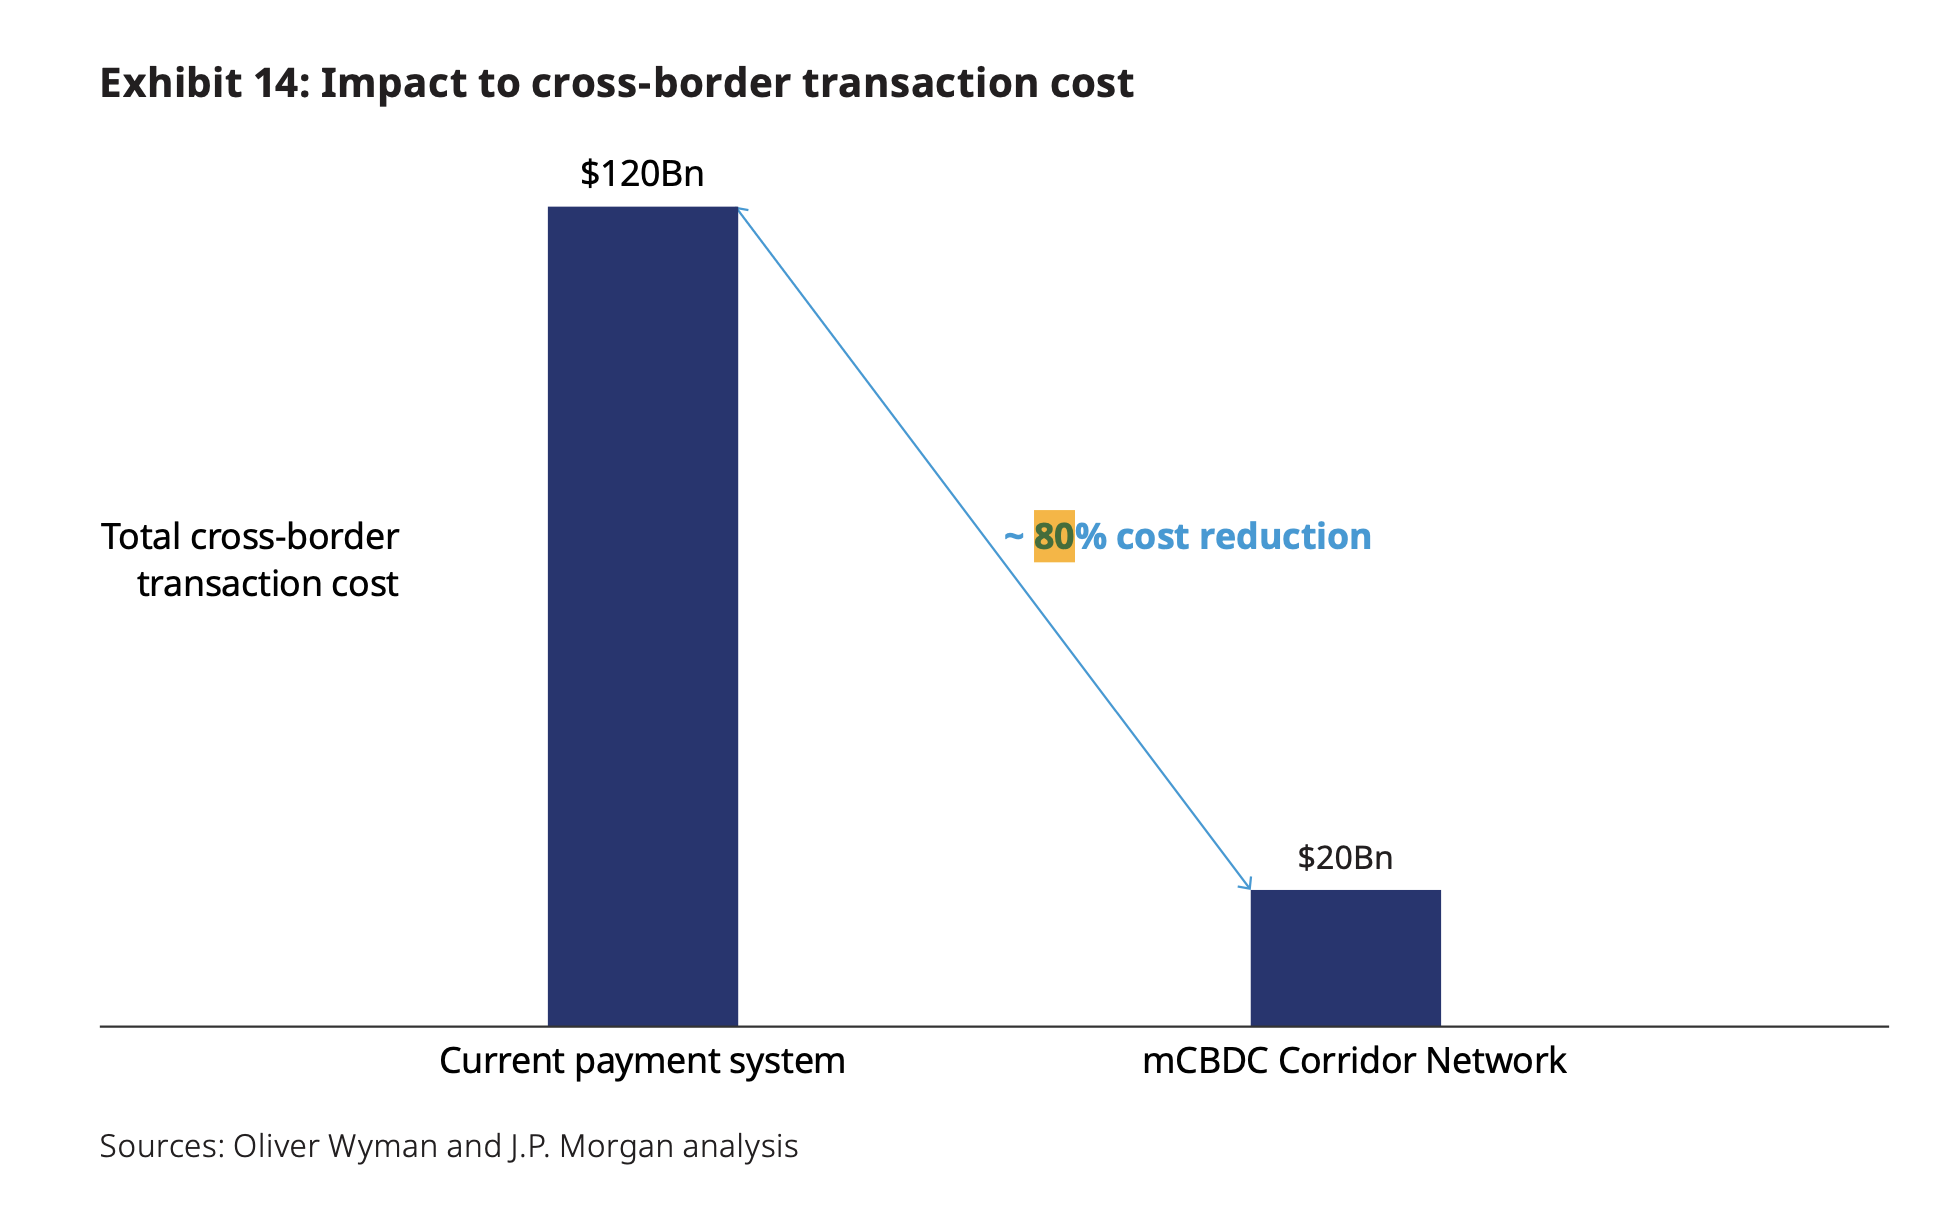 Informe afirma que las 'redes mCBDC a gran escala' podrían ahorrar $ 100 mil millones por año